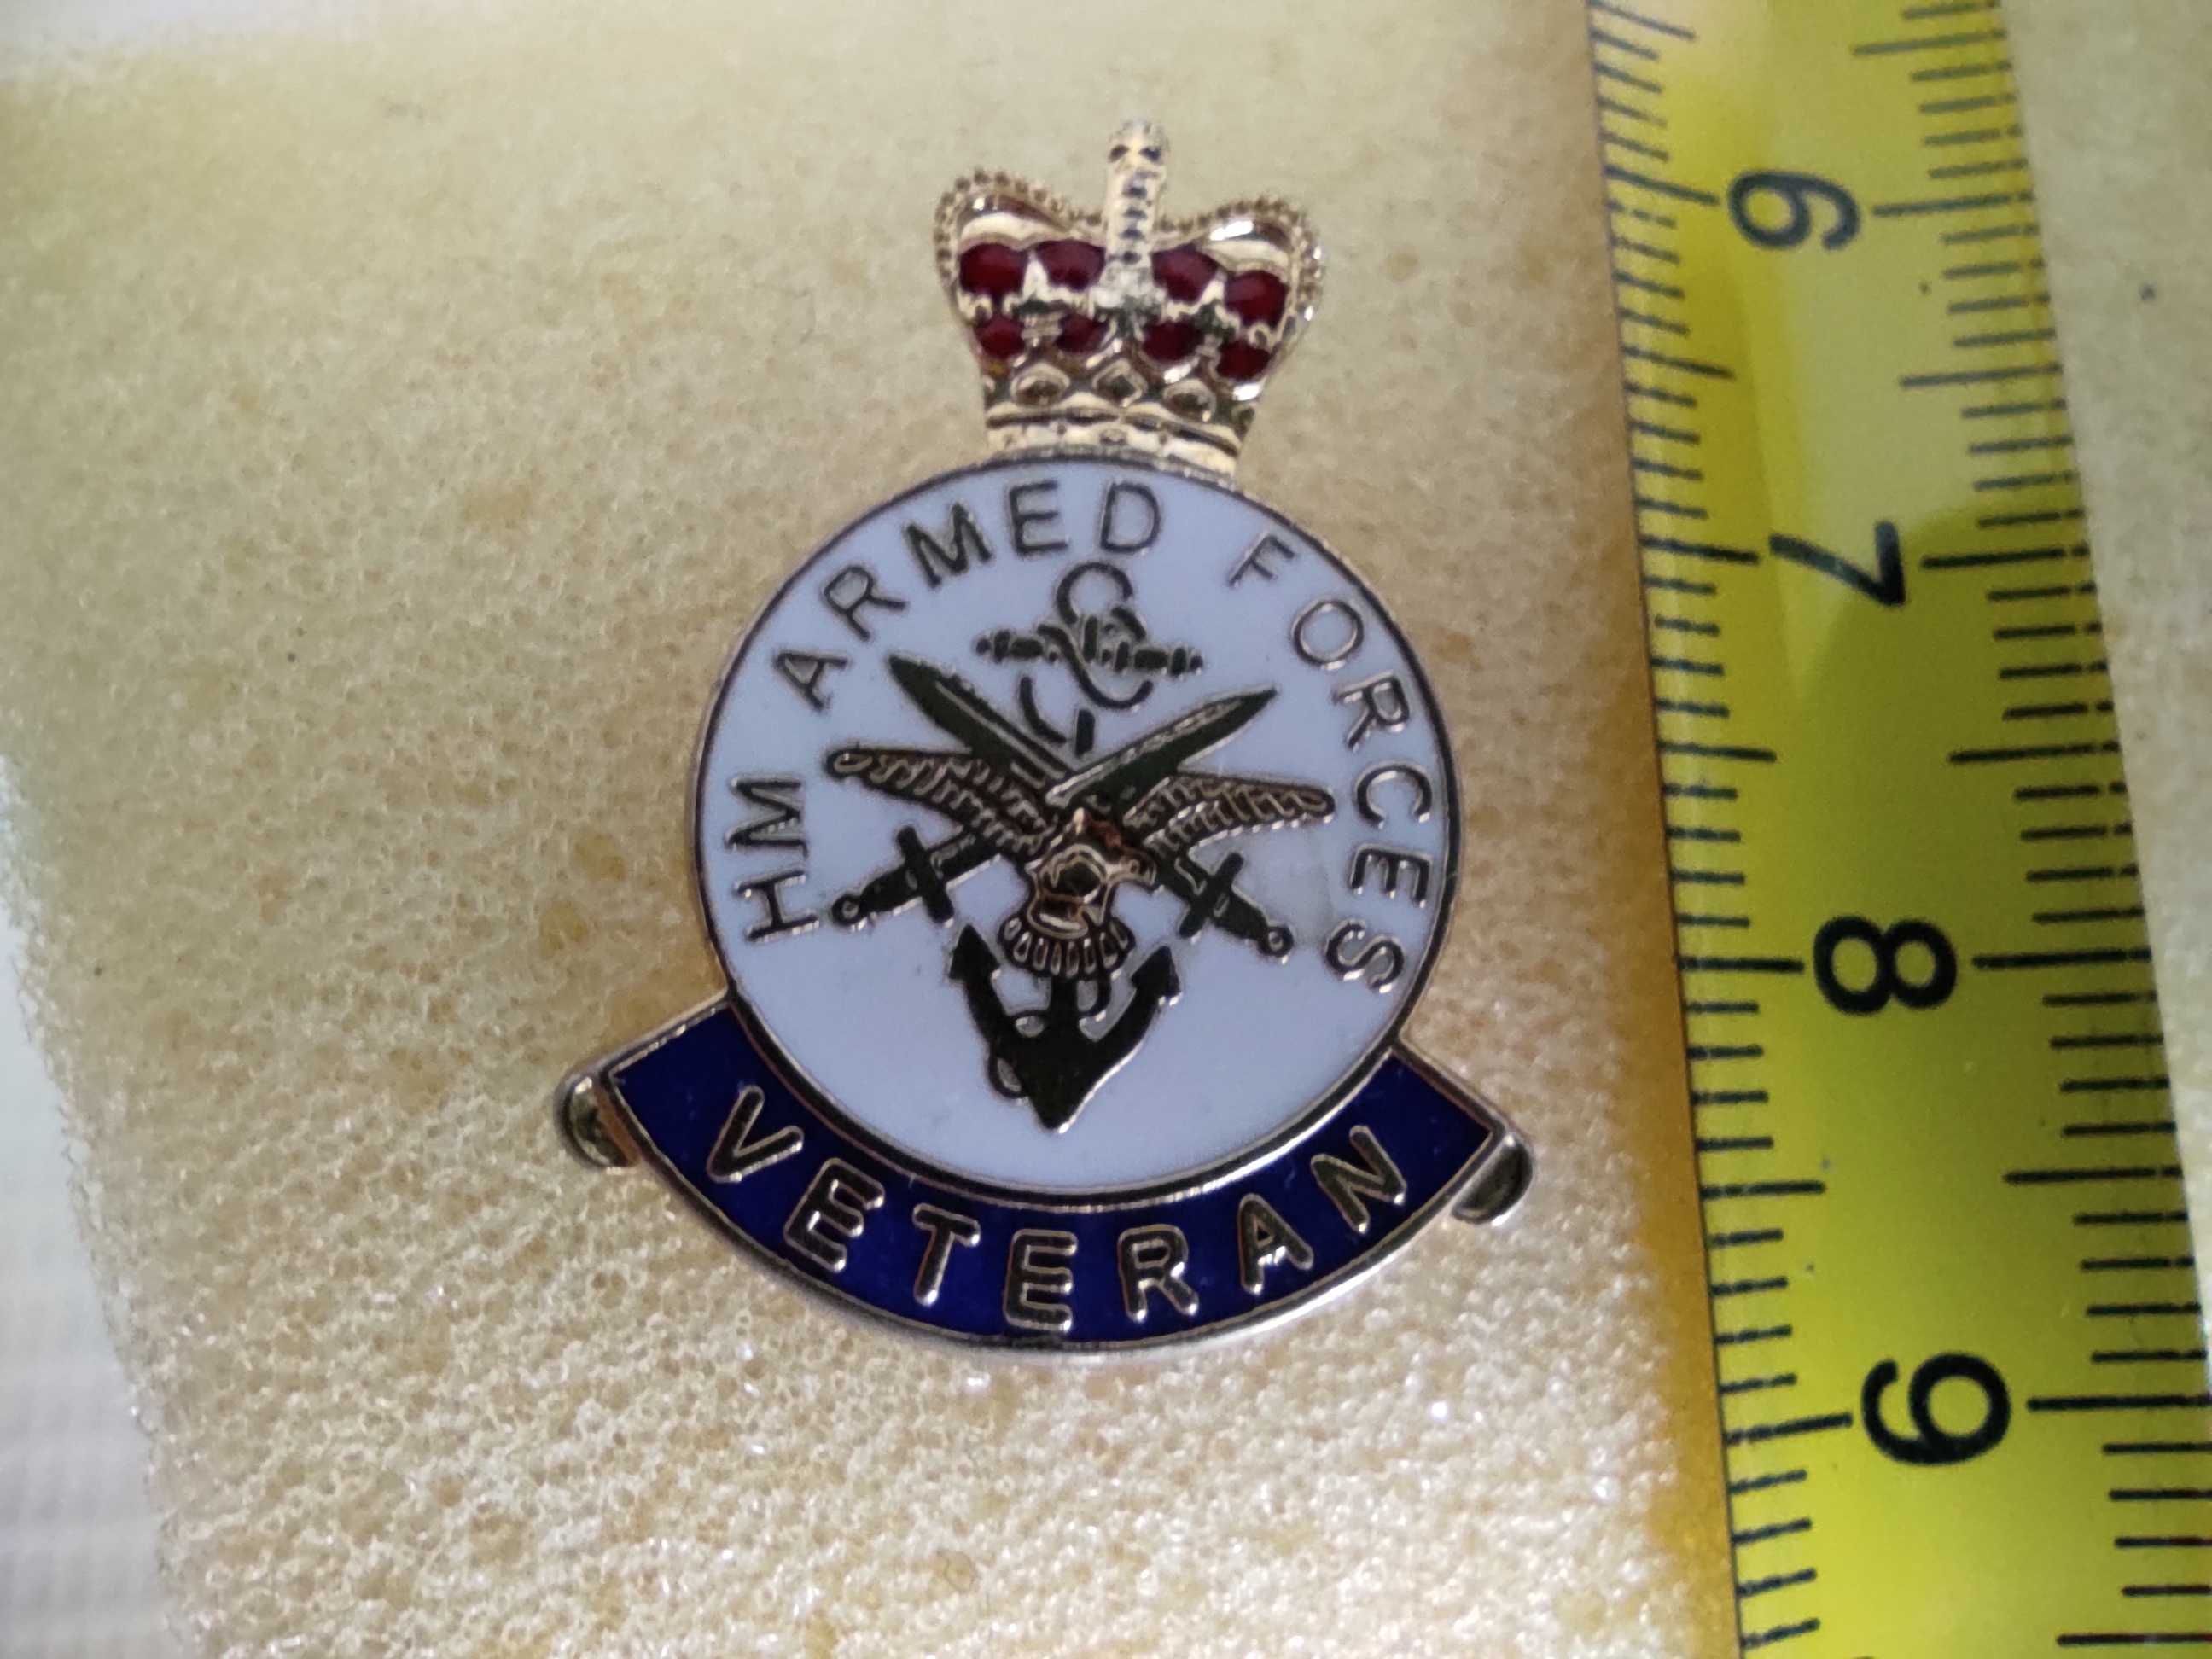 Значок ветерана армії Великобританії. "HM armed forced" Оригінал.